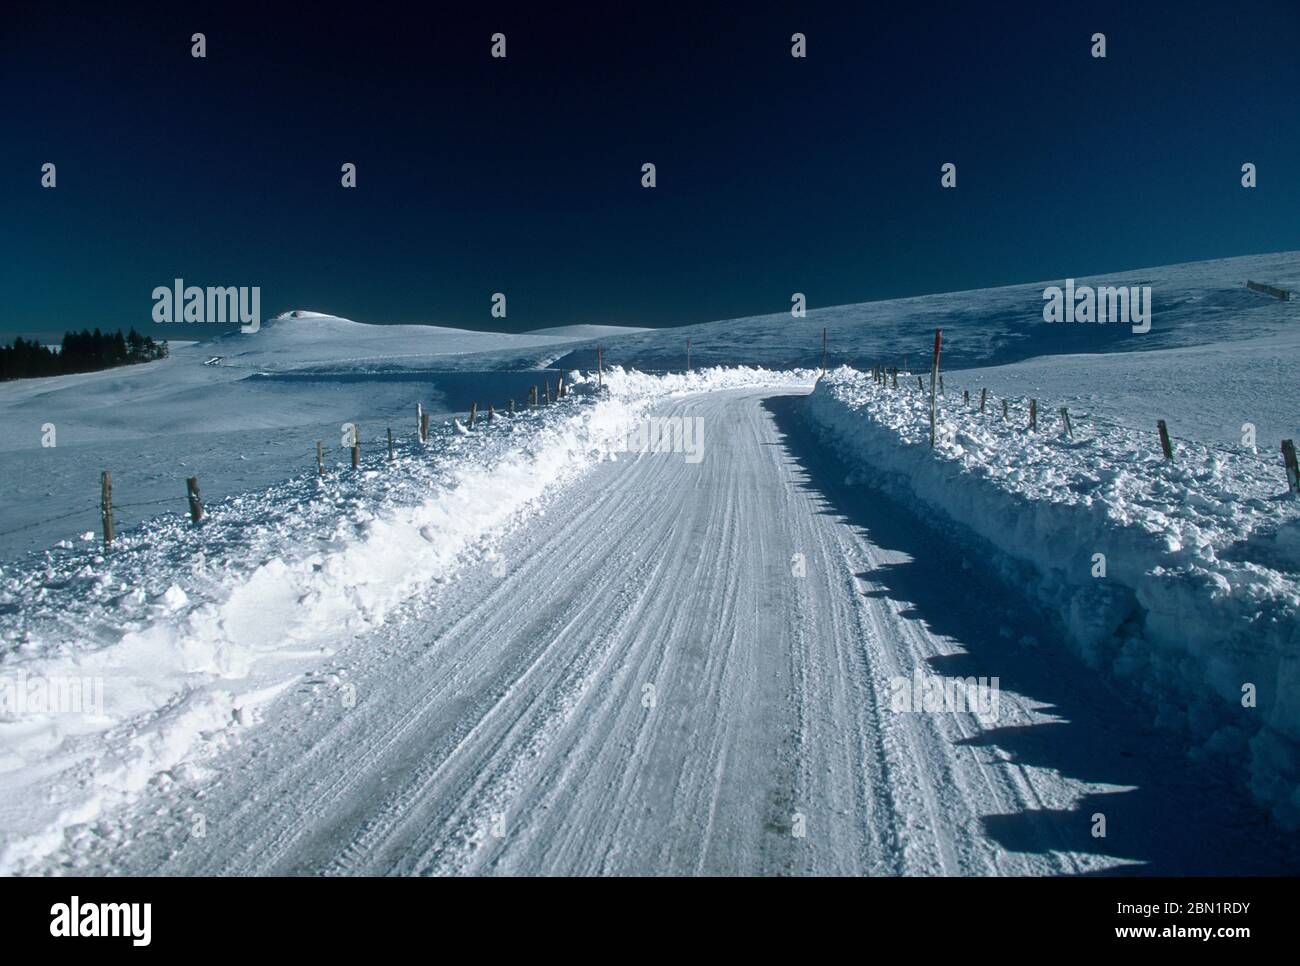 Frozen road in winter, Cezallier region, Auvergne-Rhone-Alpes, France Stock Photo